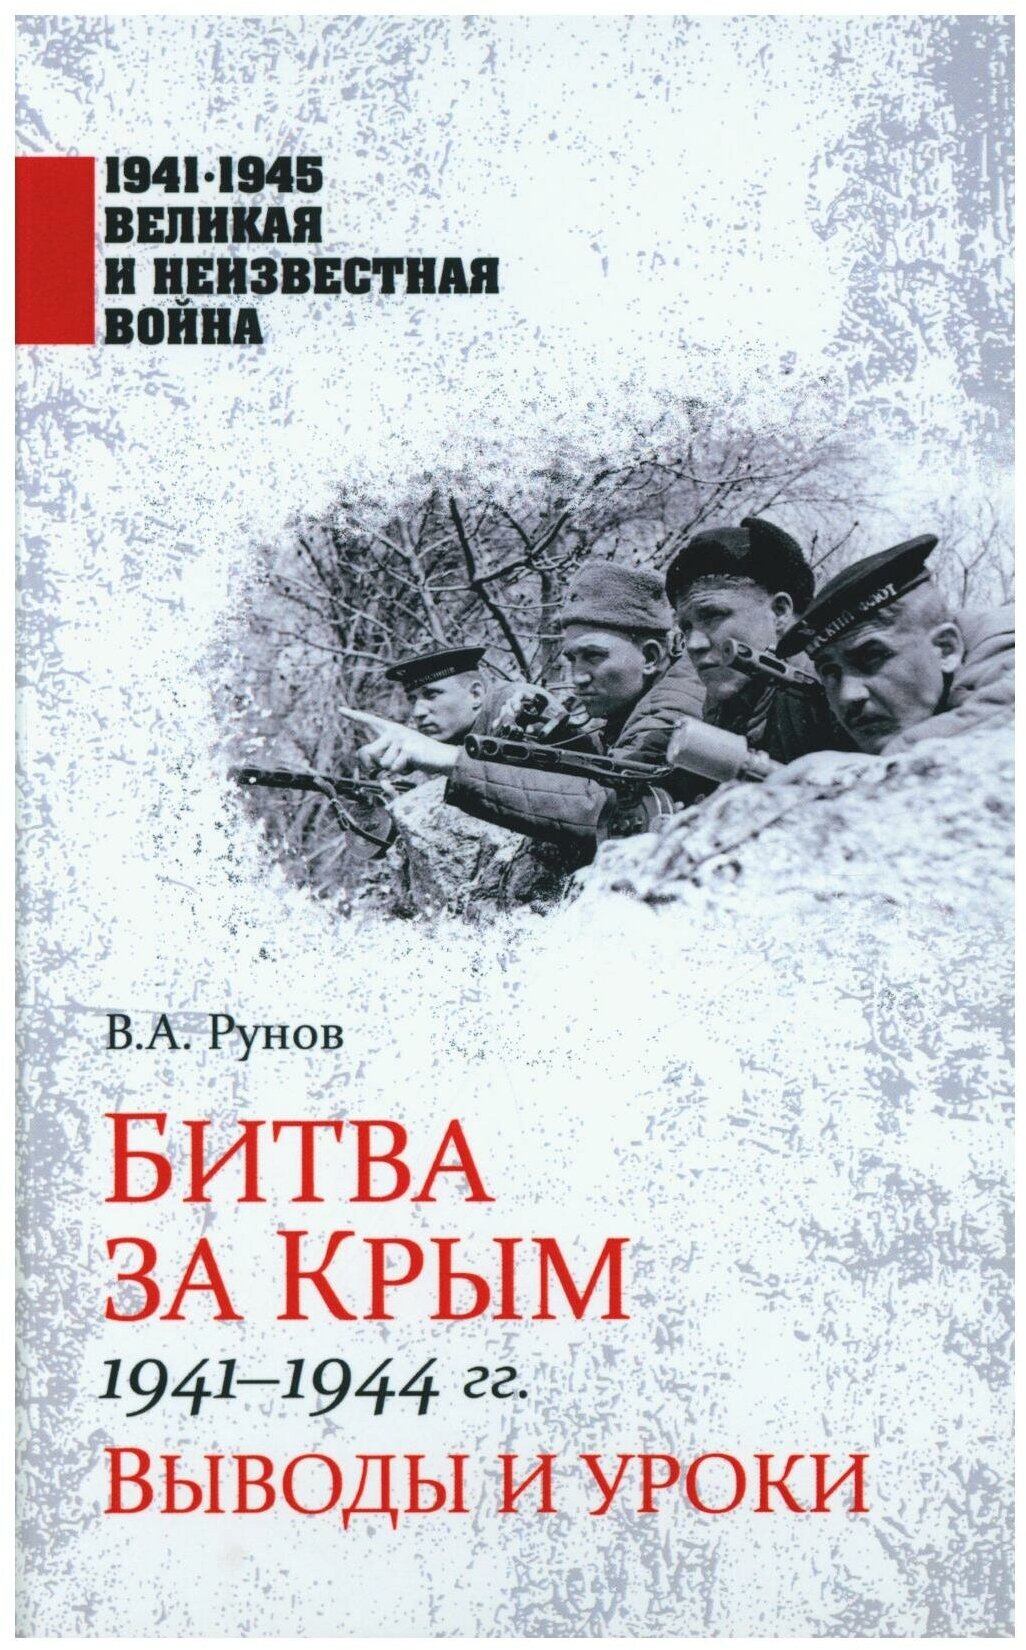 Битва за Крым 1941-1944 гг. Выводы и уроки - фото №1